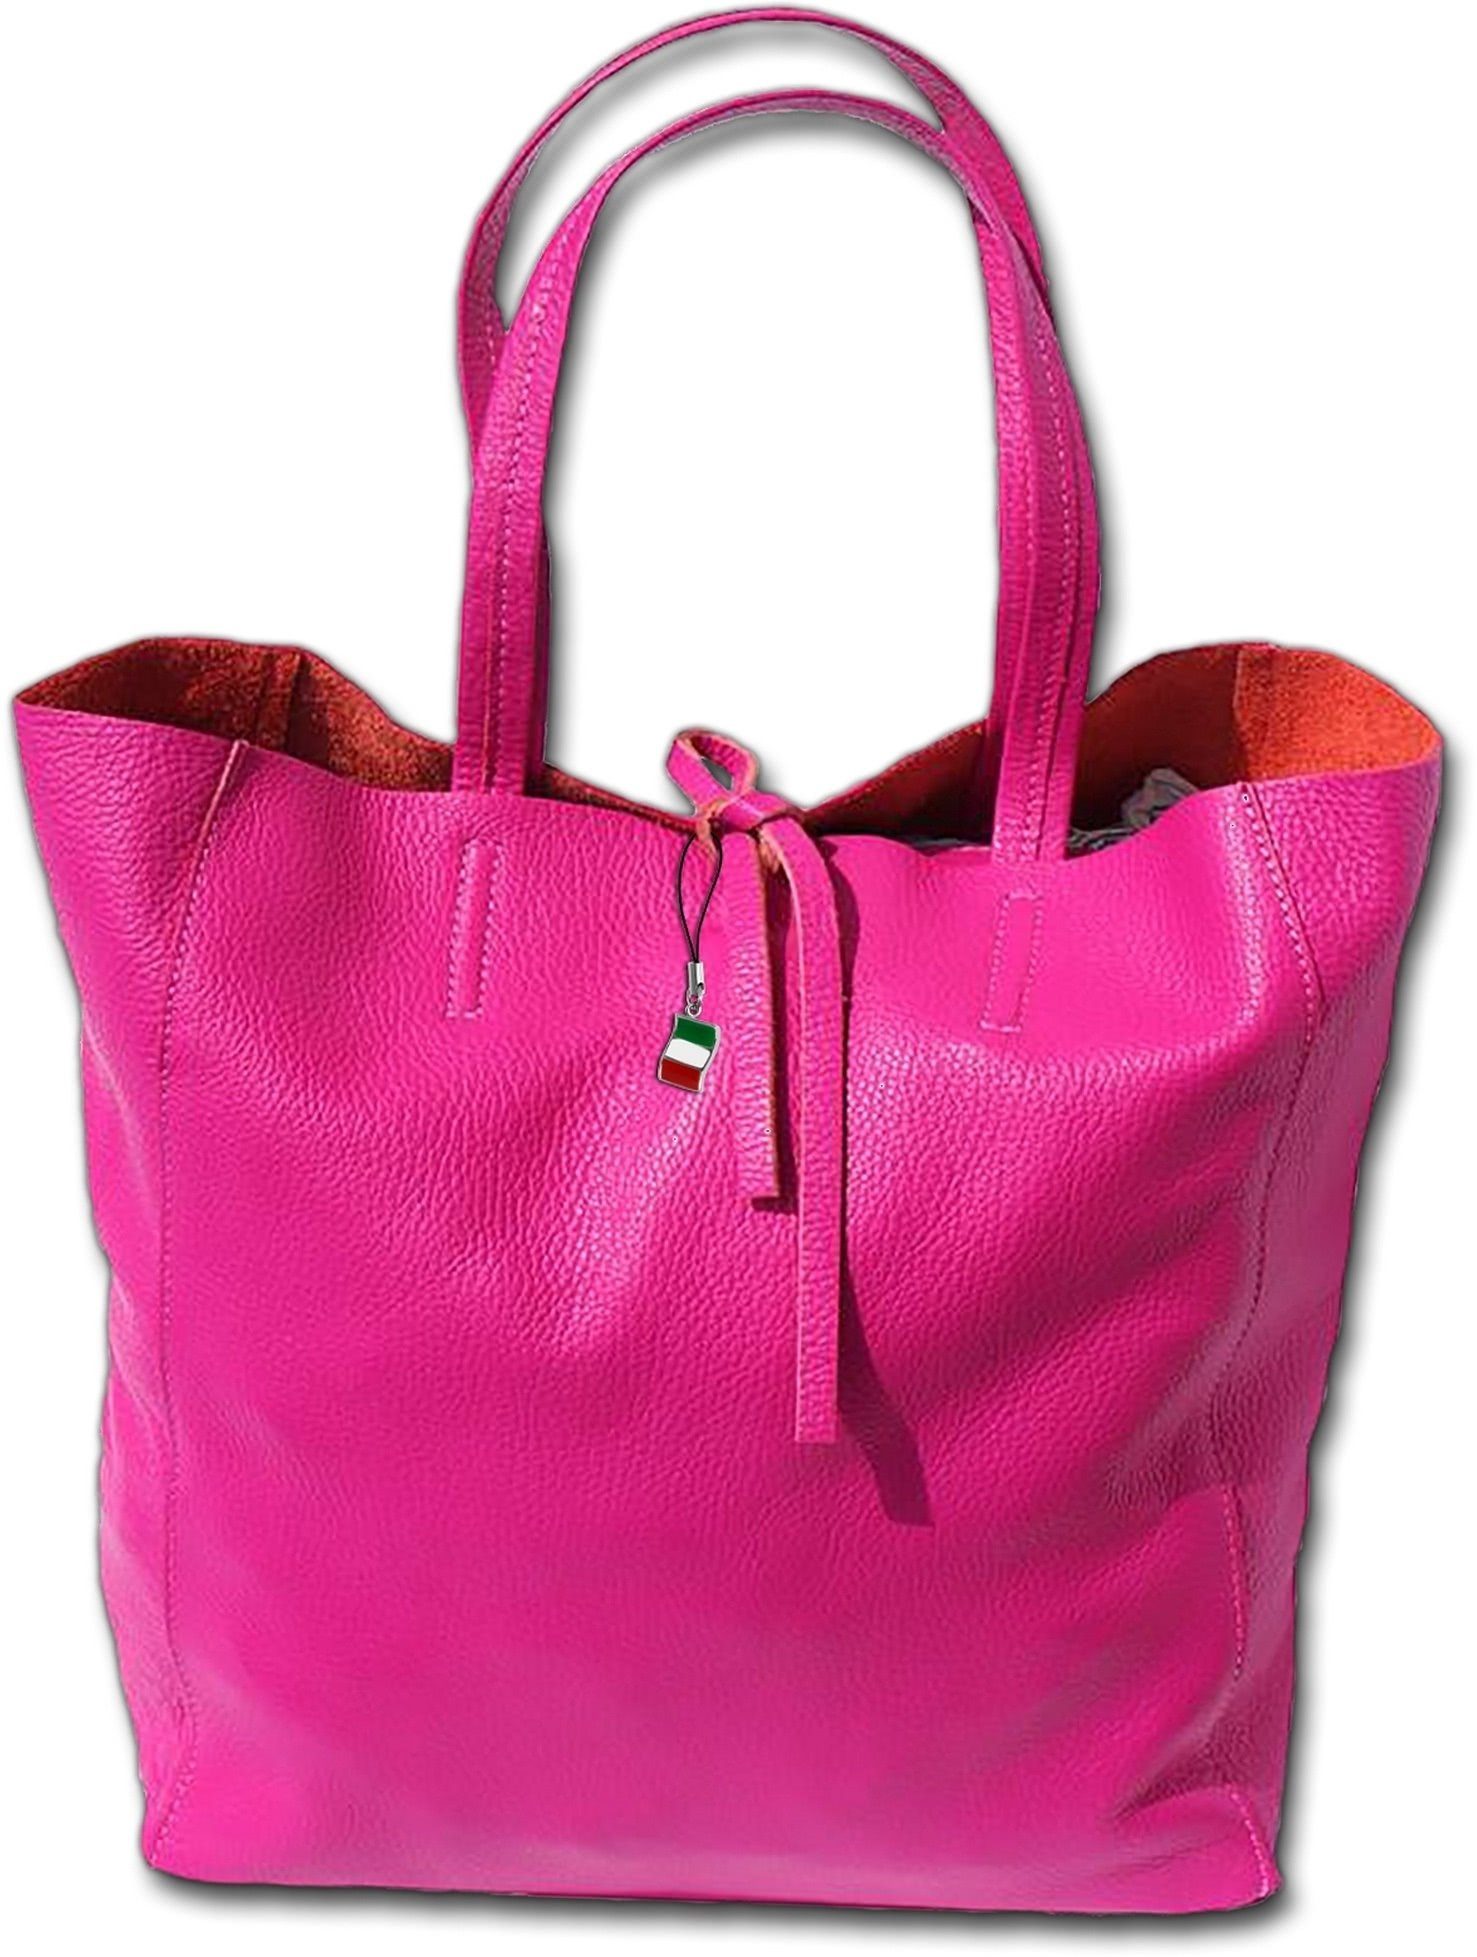 FLORENCE Shopper Florence Echtleder Schultertasche pink, Damen Tasche  Echtleder, Rindsleder pink, Made-In Italy